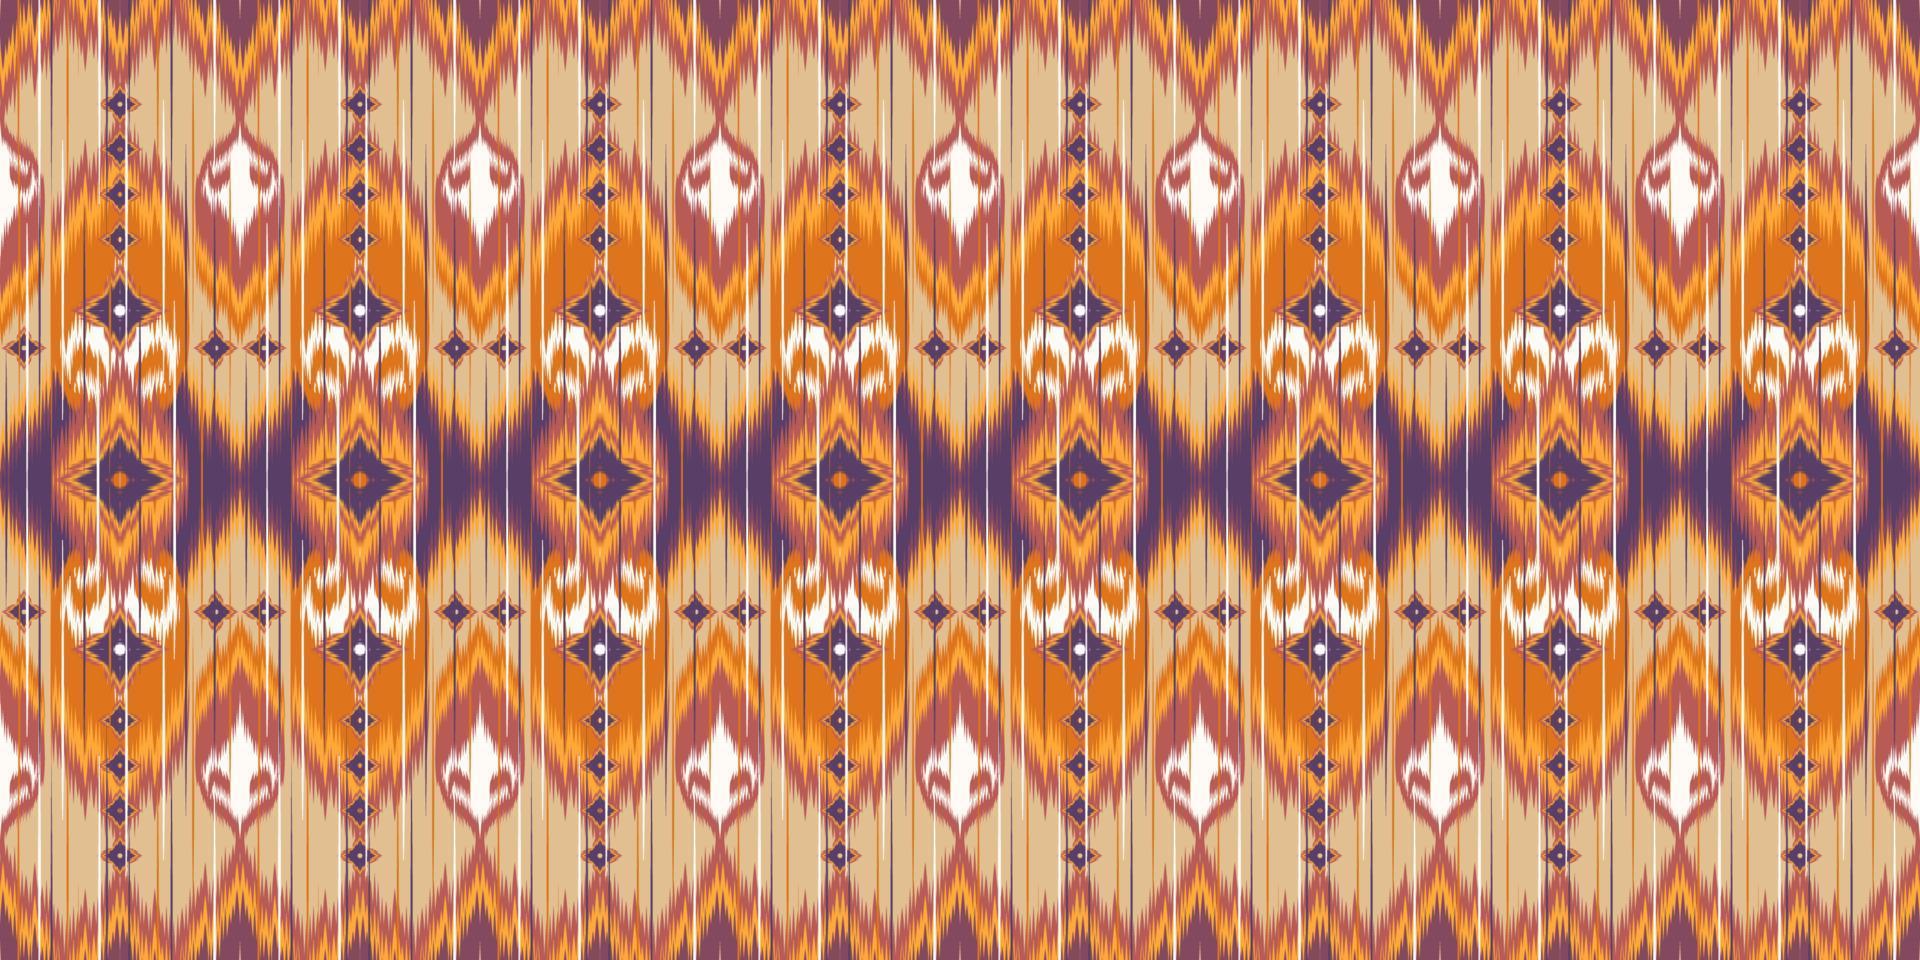 patrón de tela étnica diseñado a partir de formas geométricas patrón de tela de estilo étnico asiático utilizado para la decoración del hogar, trabajo de alfombras, uso interior y exterior. vector